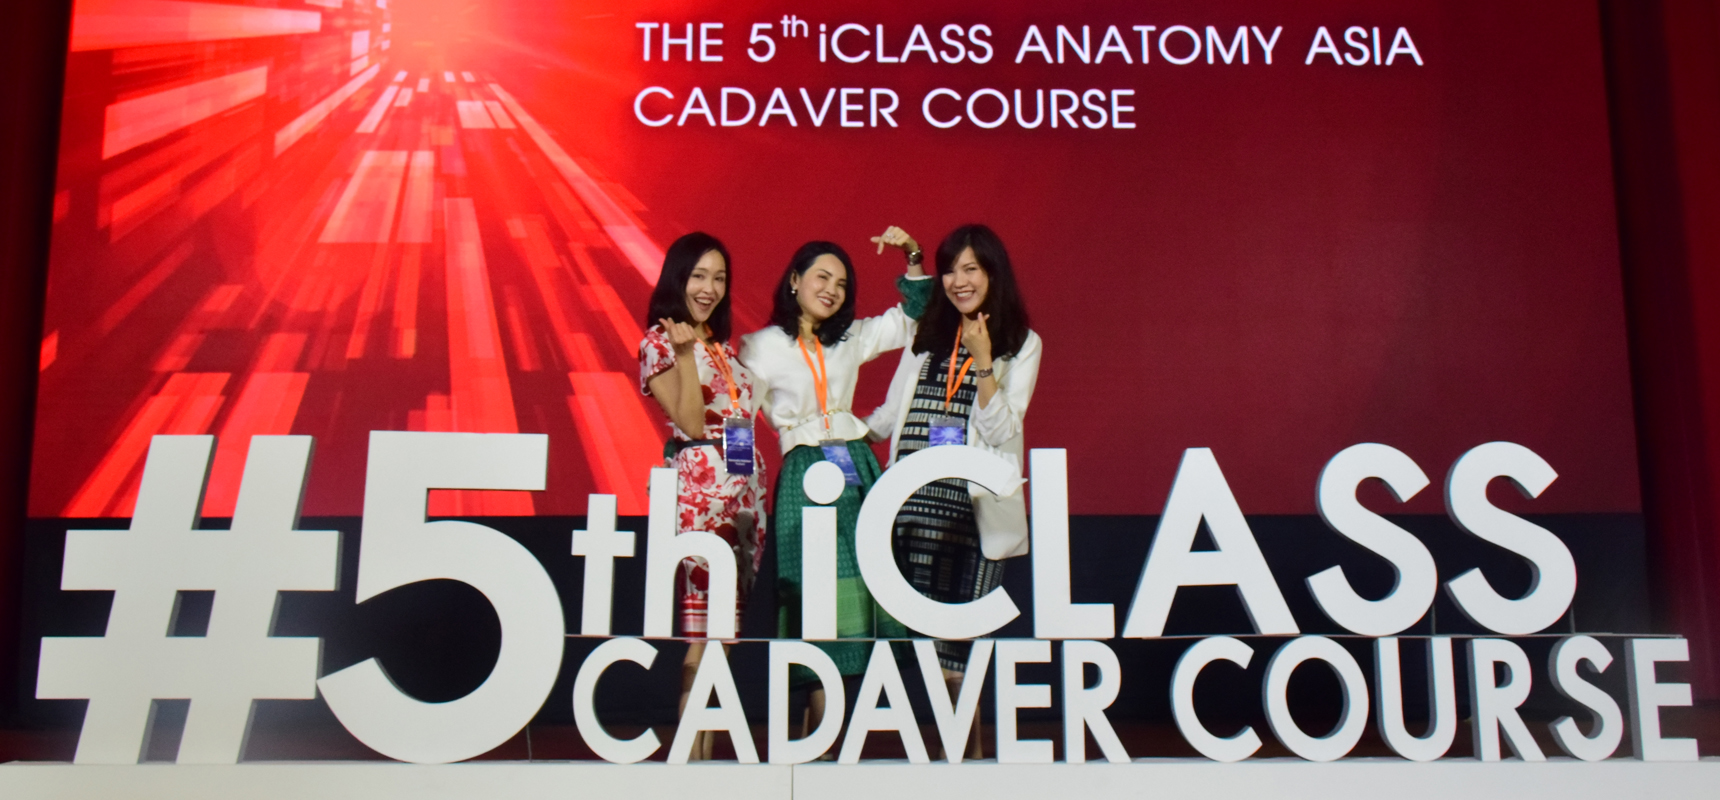 แพทย์ iSKY ร่วมเป็นวิทยากรสอนฉีดฟิลเลอร์และกายวิภาคบนใบหน้า ในงาน 5th iClass Anatomy Asia Cadaver Course